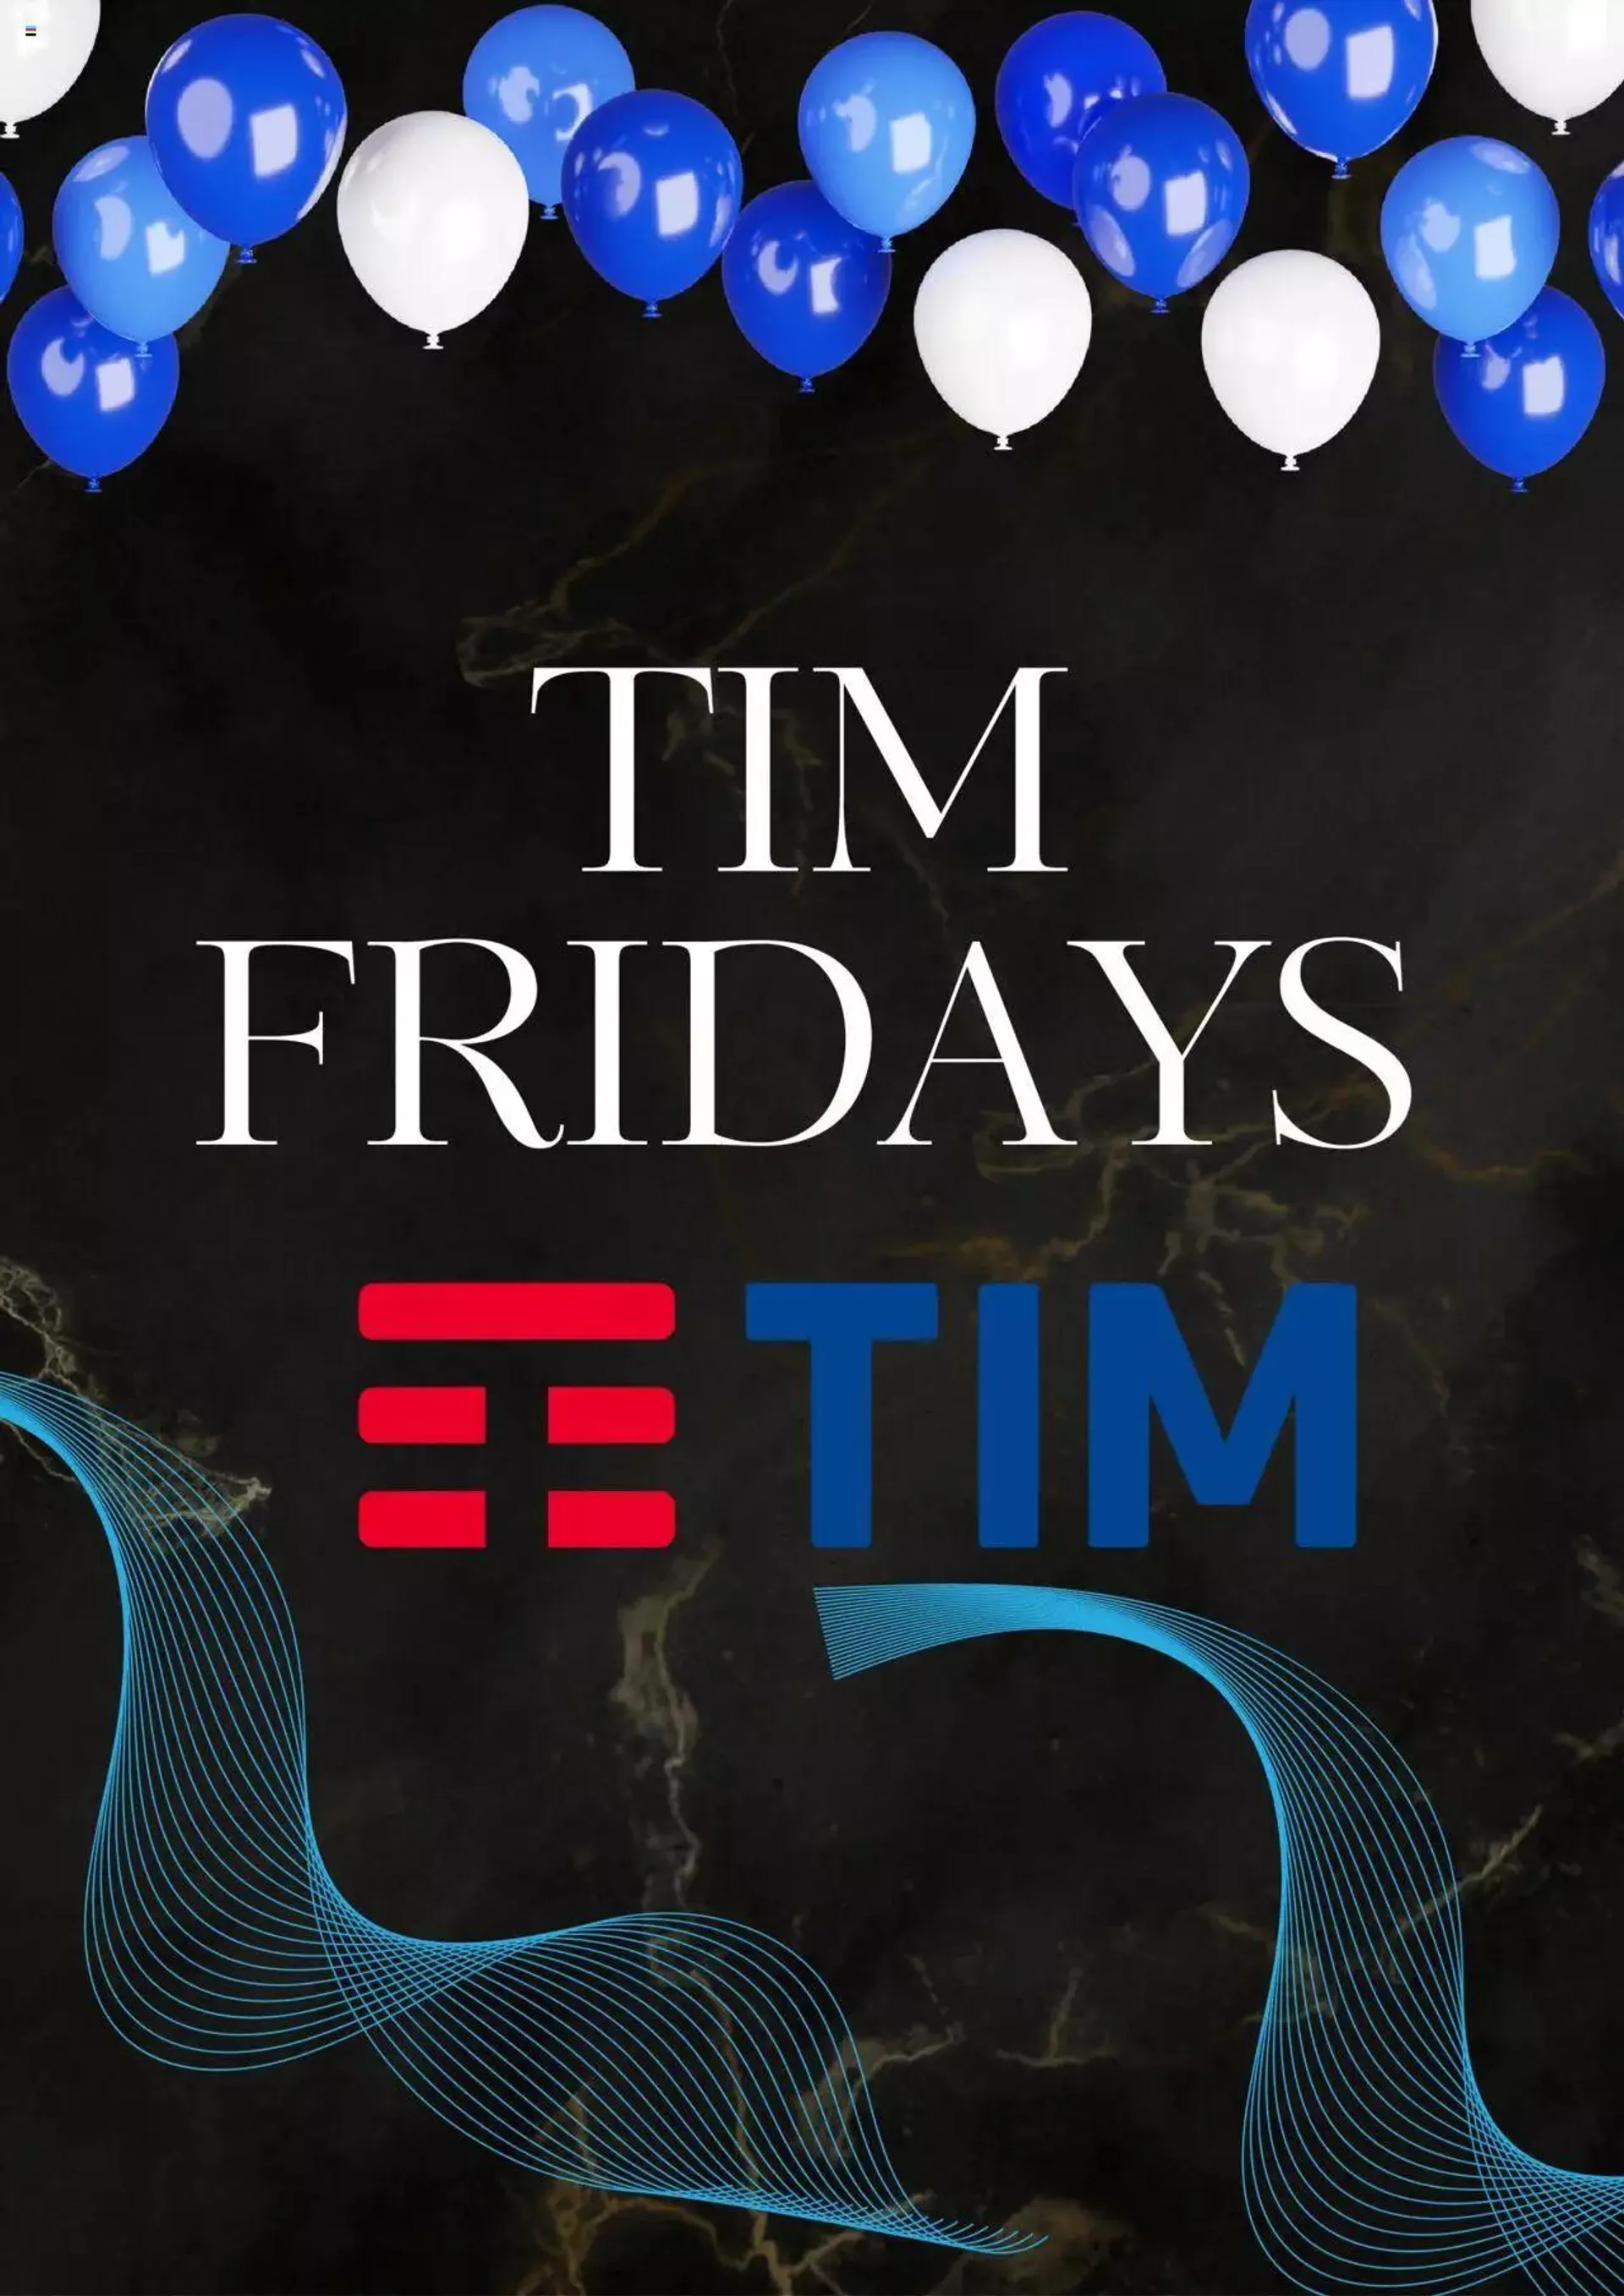 TIM - Tim Fridays - 0